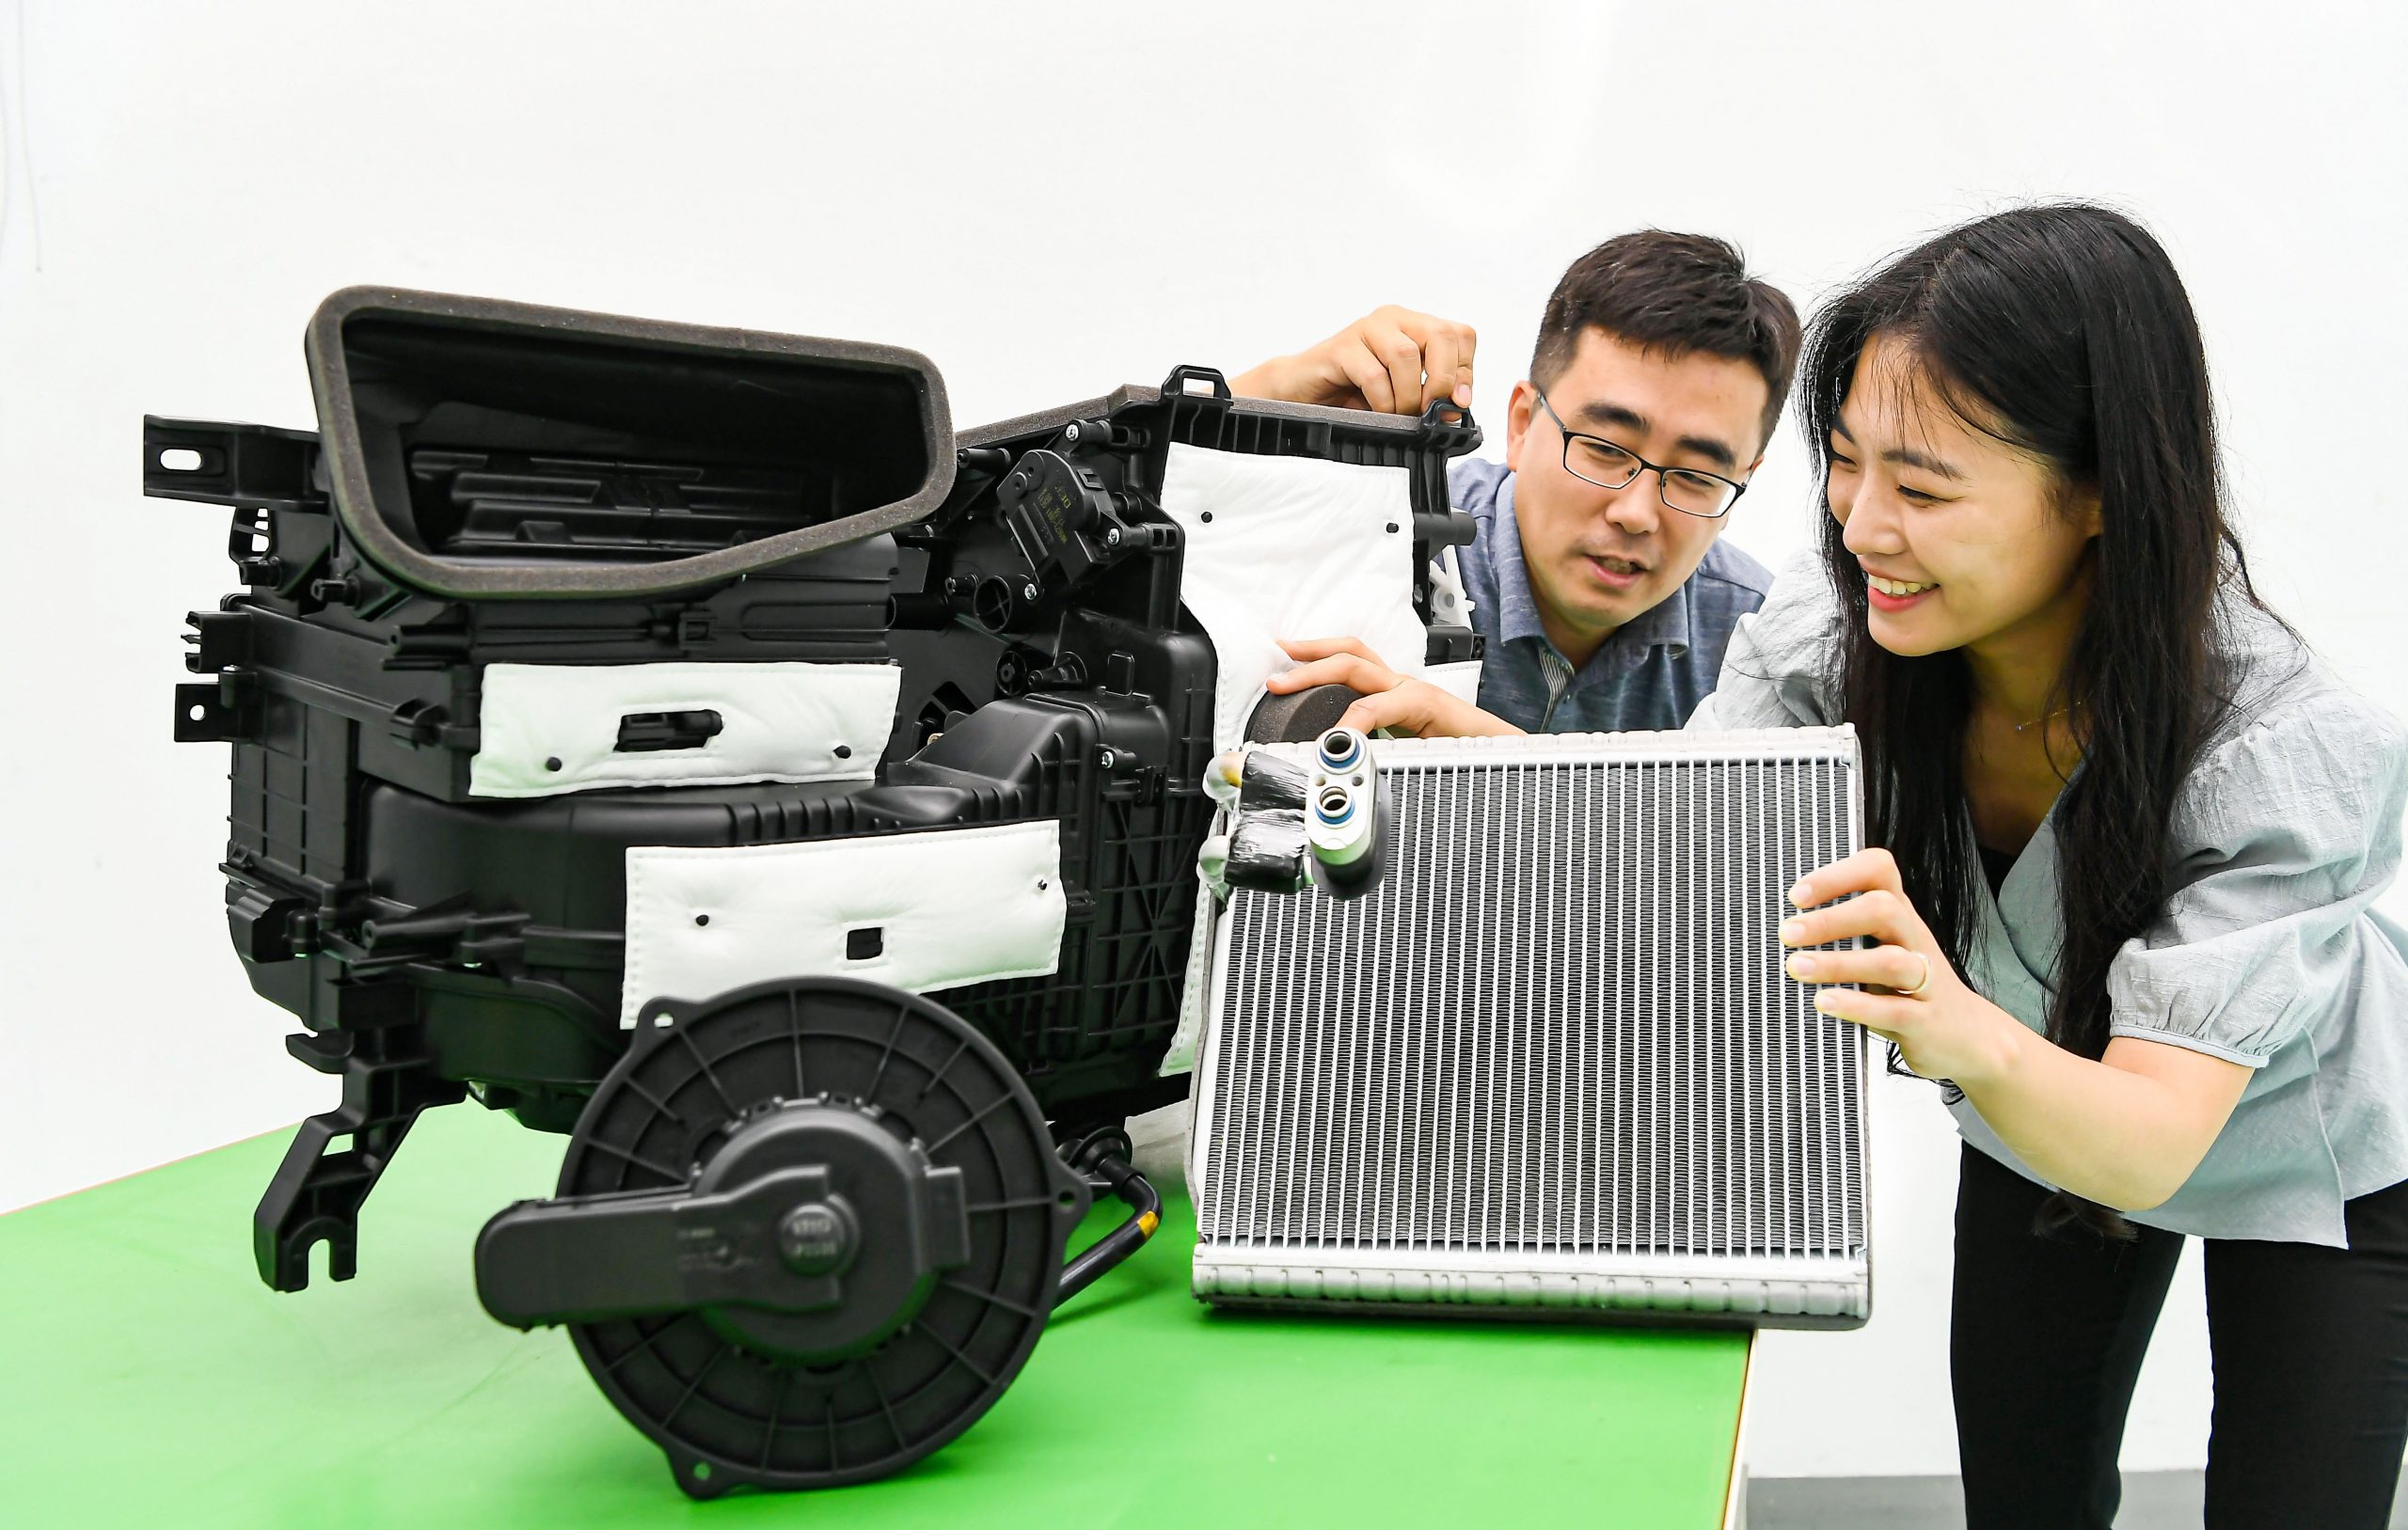 مجموعة هيونداي موتور تطور تقنيات جديدة لمكيفات هواء مركباتها